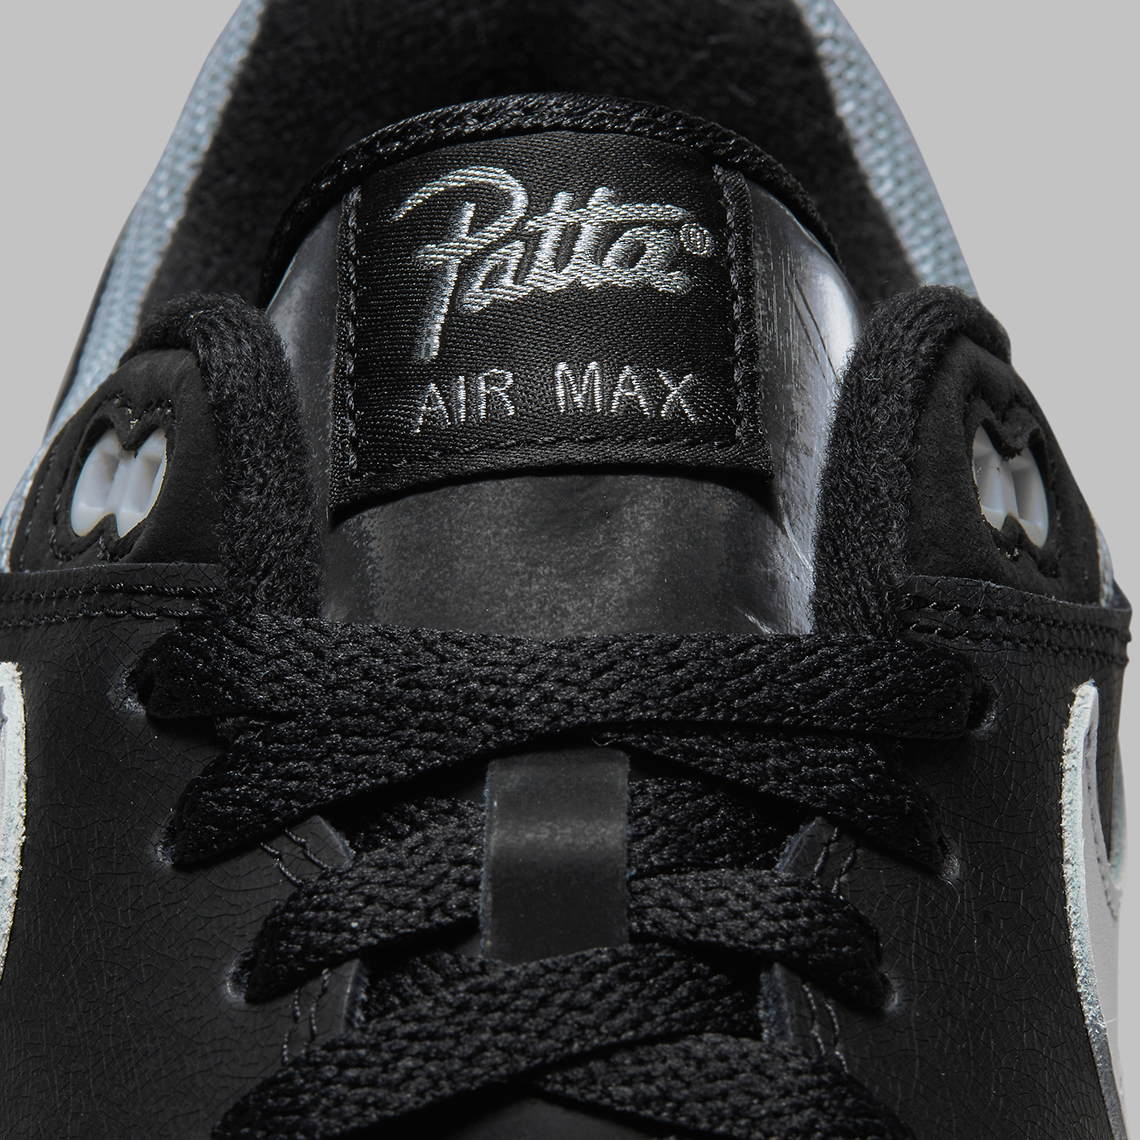 Patta Nike Air Max 1 Black Dq0299 001 9